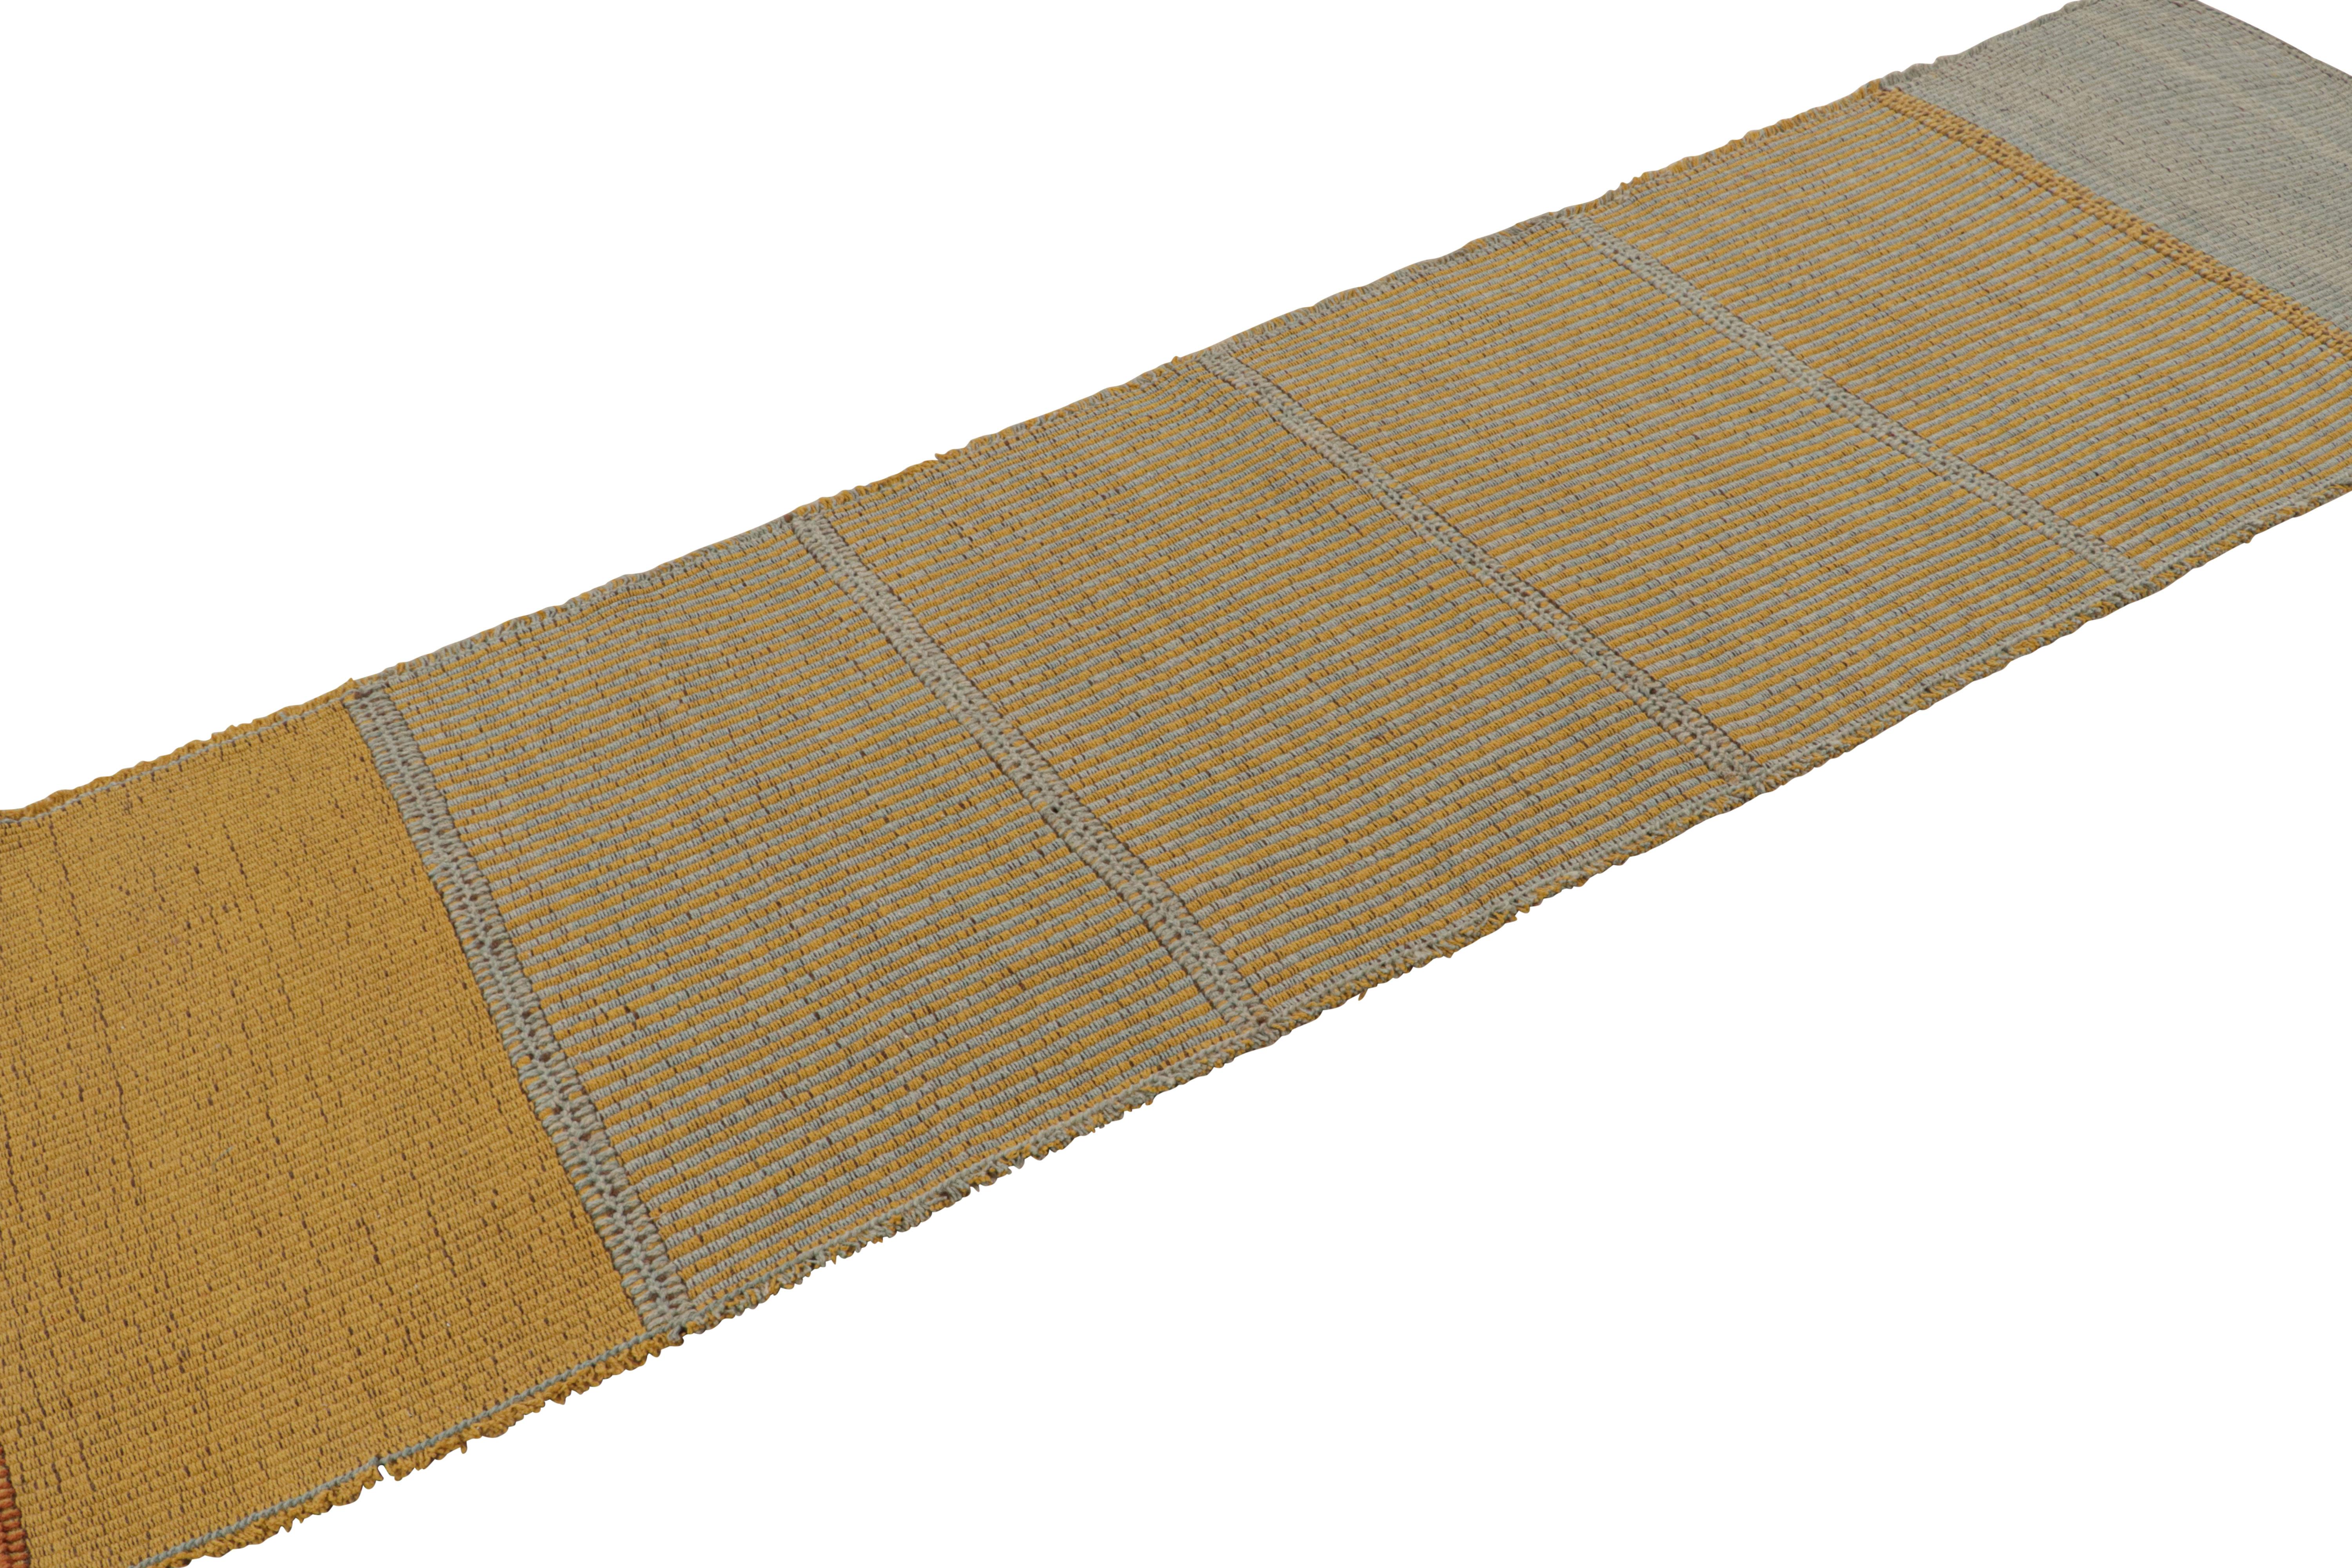 Tissé à la main en laine, ce design Kilim 3x10 fait partie d'une nouvelle collection contemporaine inventive de Rug & Kilim.

Sur le Design : 

Appelé affectueusement 